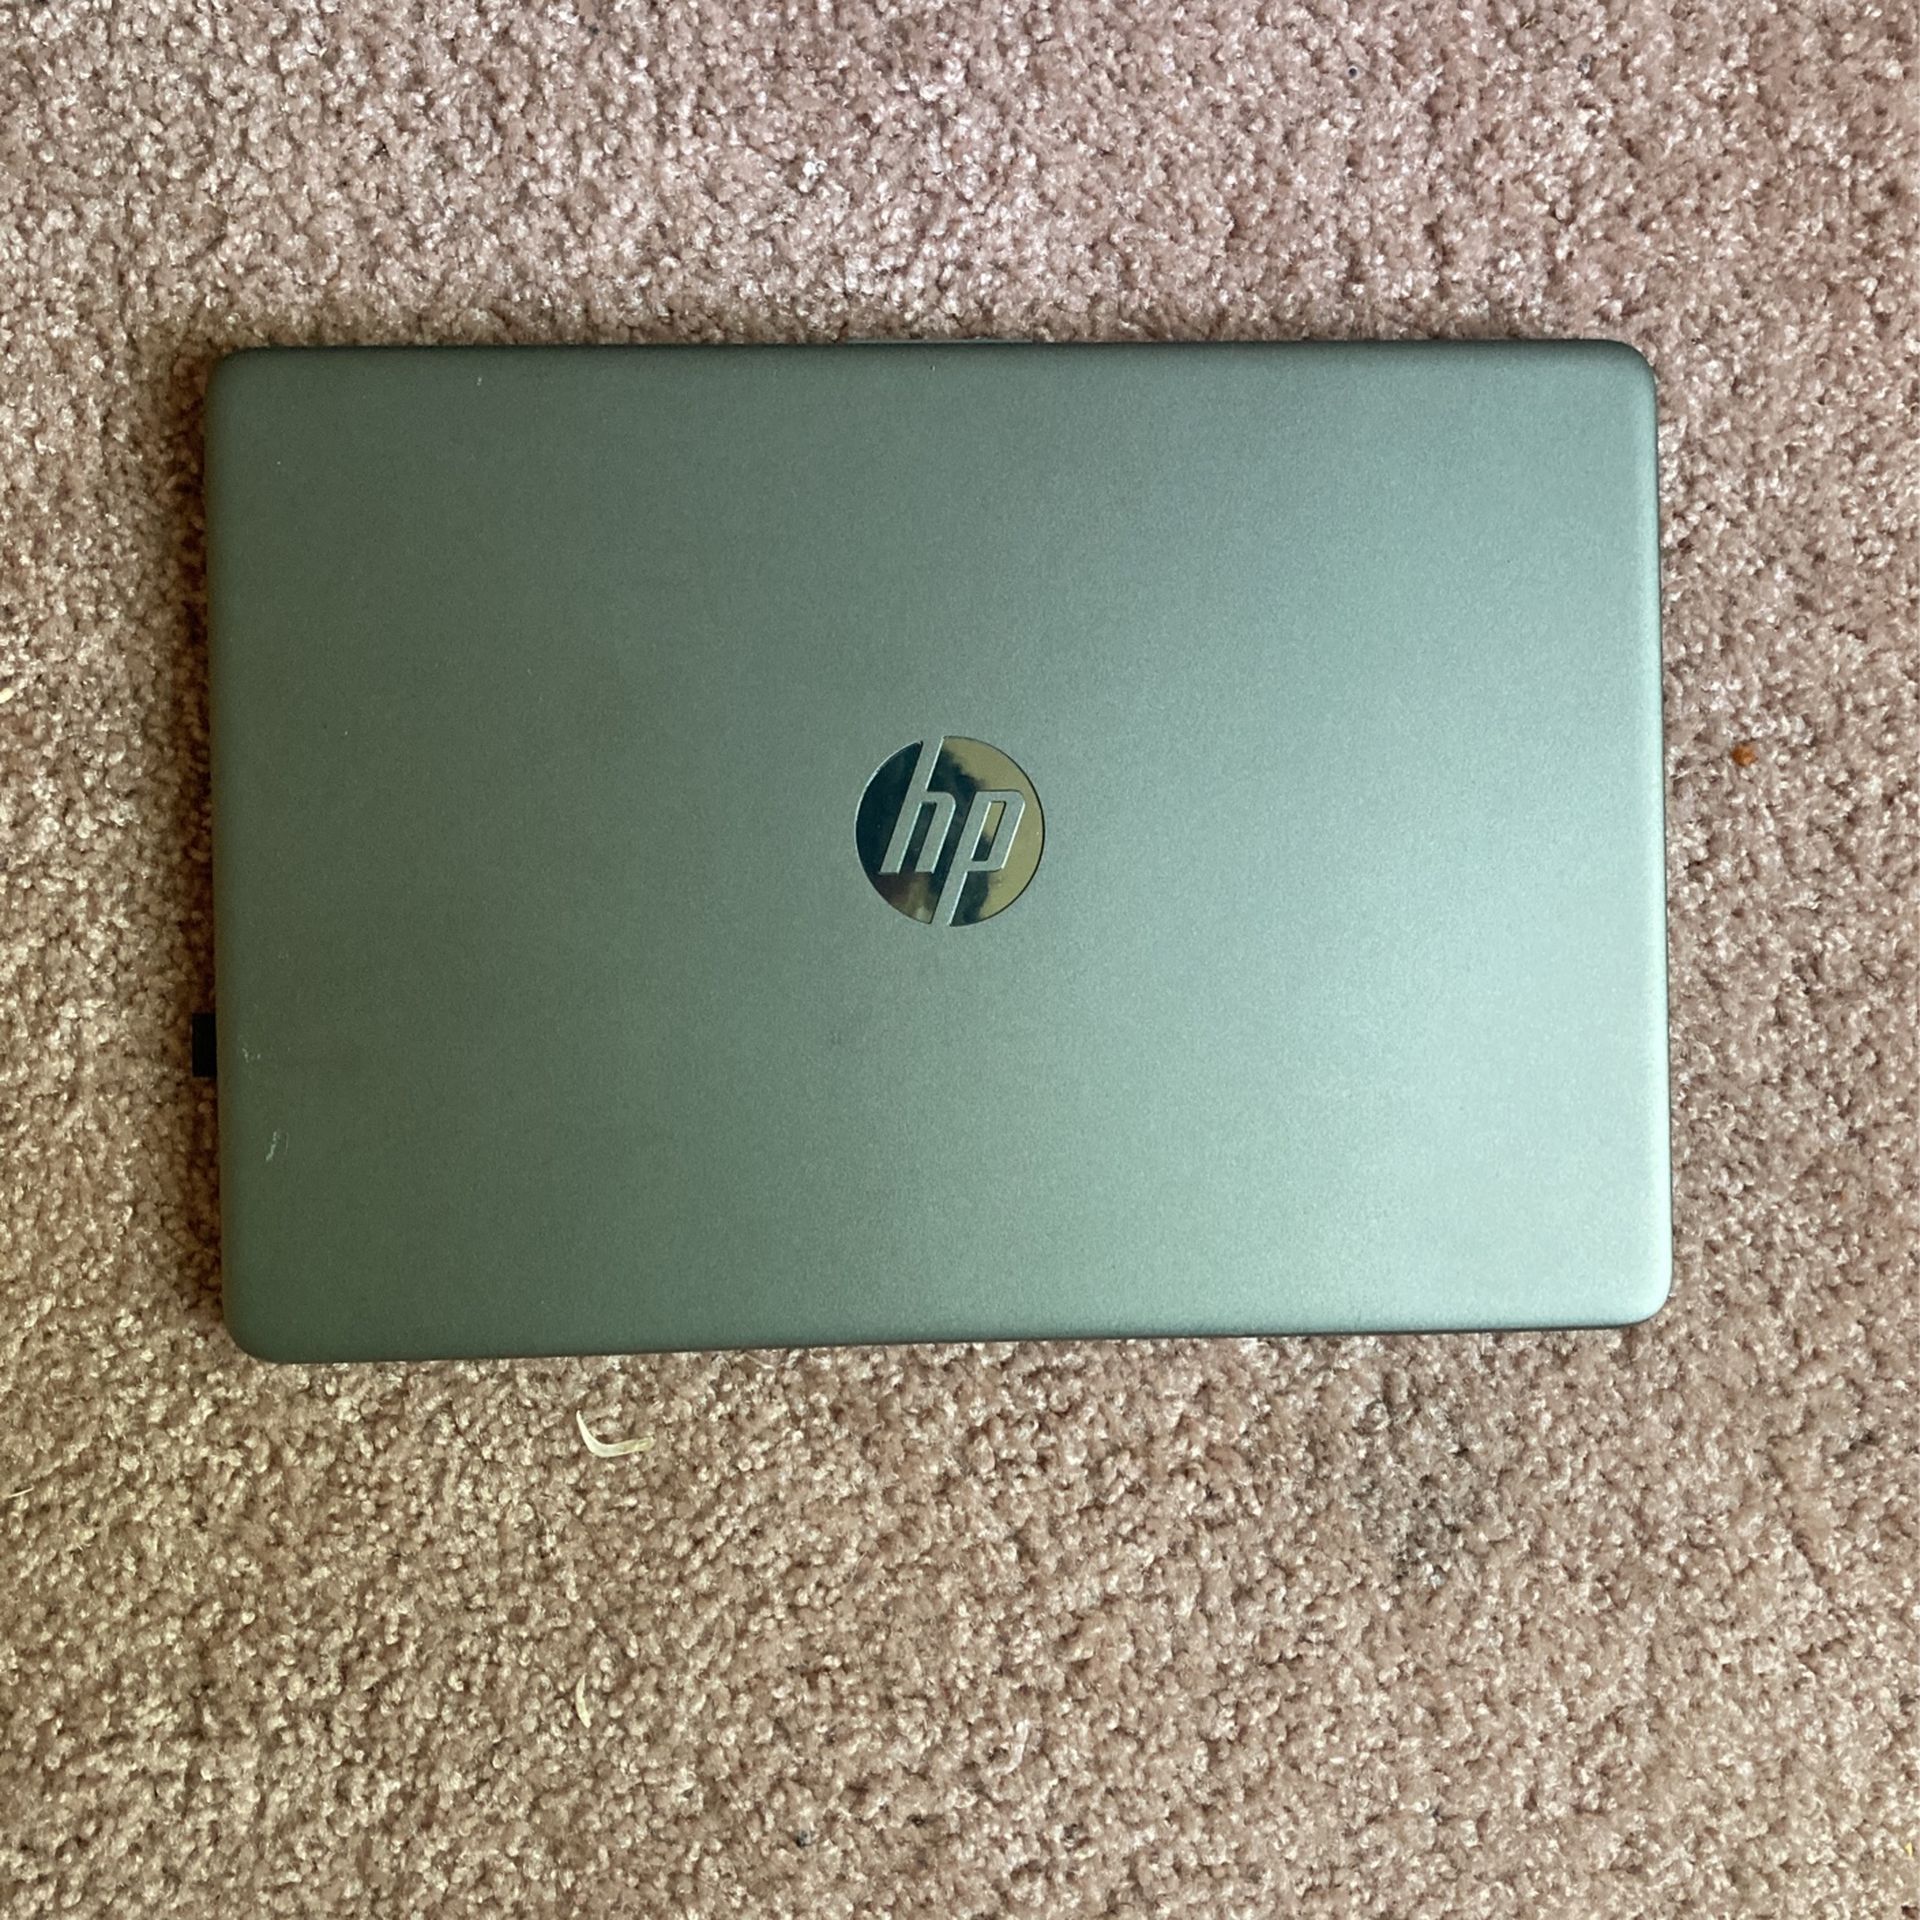 HP Windows 10 14 Laptop